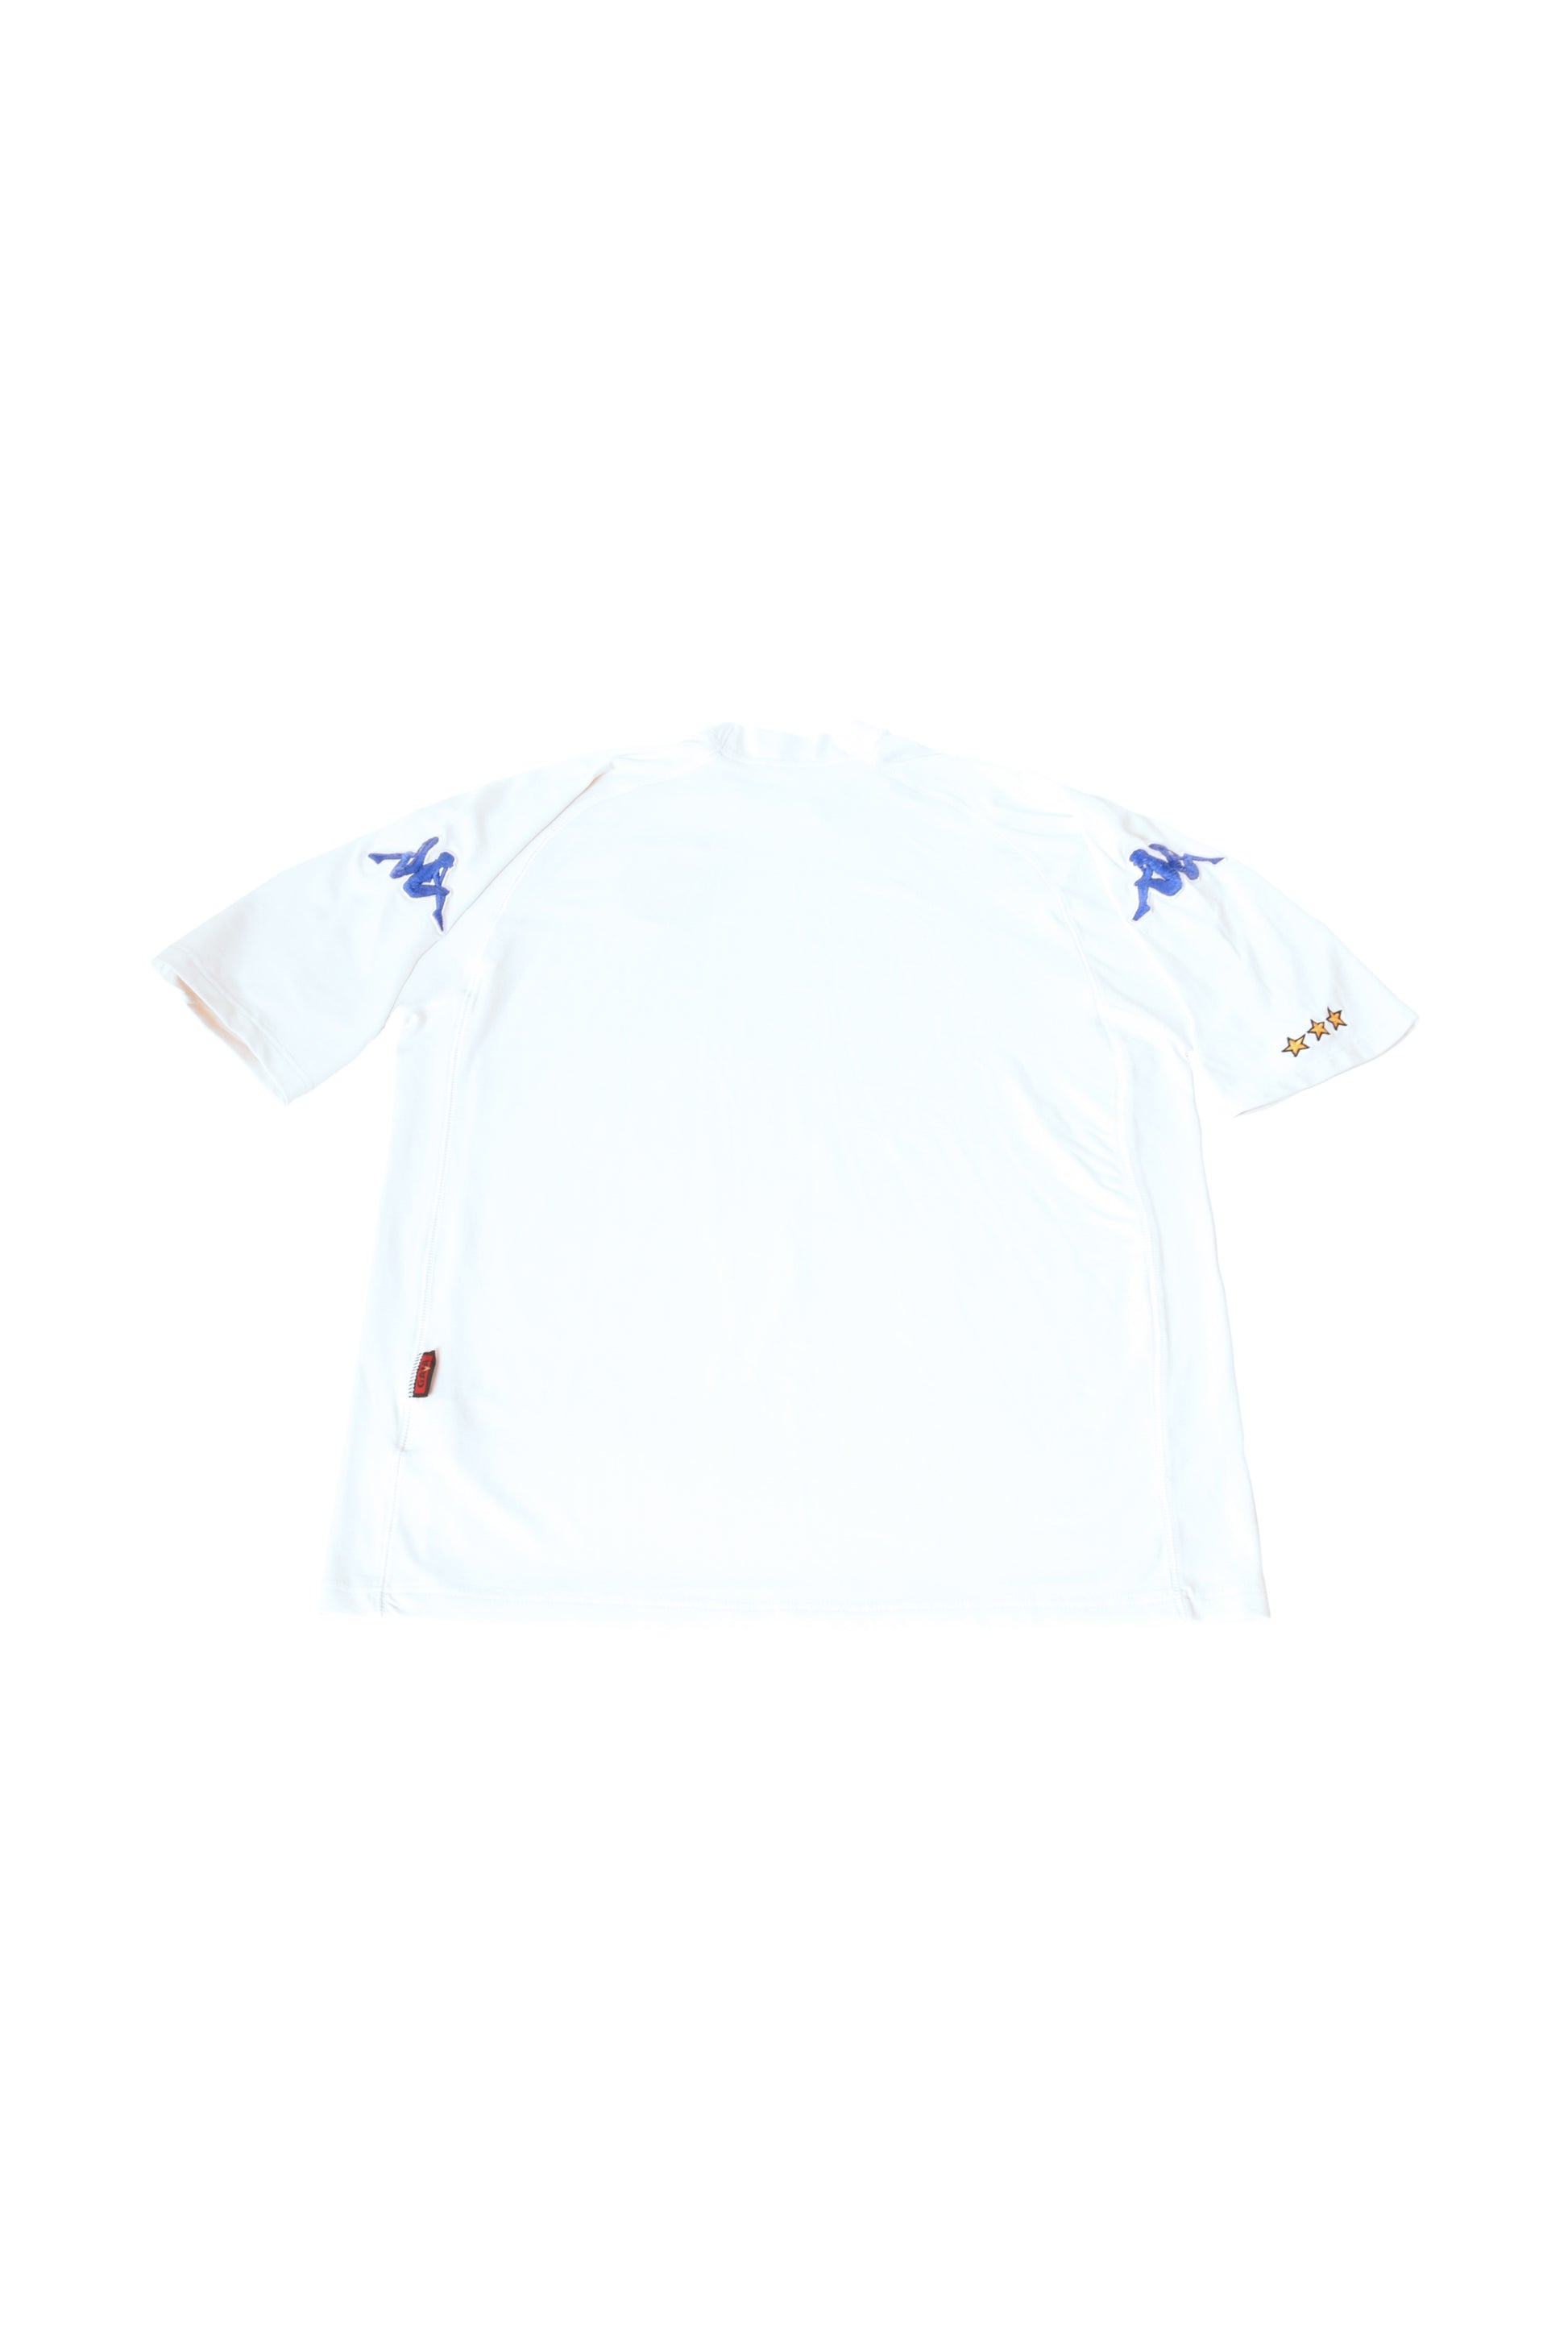 Kappa Italy Italia 2000-2001 Away Football Shirt Made in Italy Size L White Euro 2000